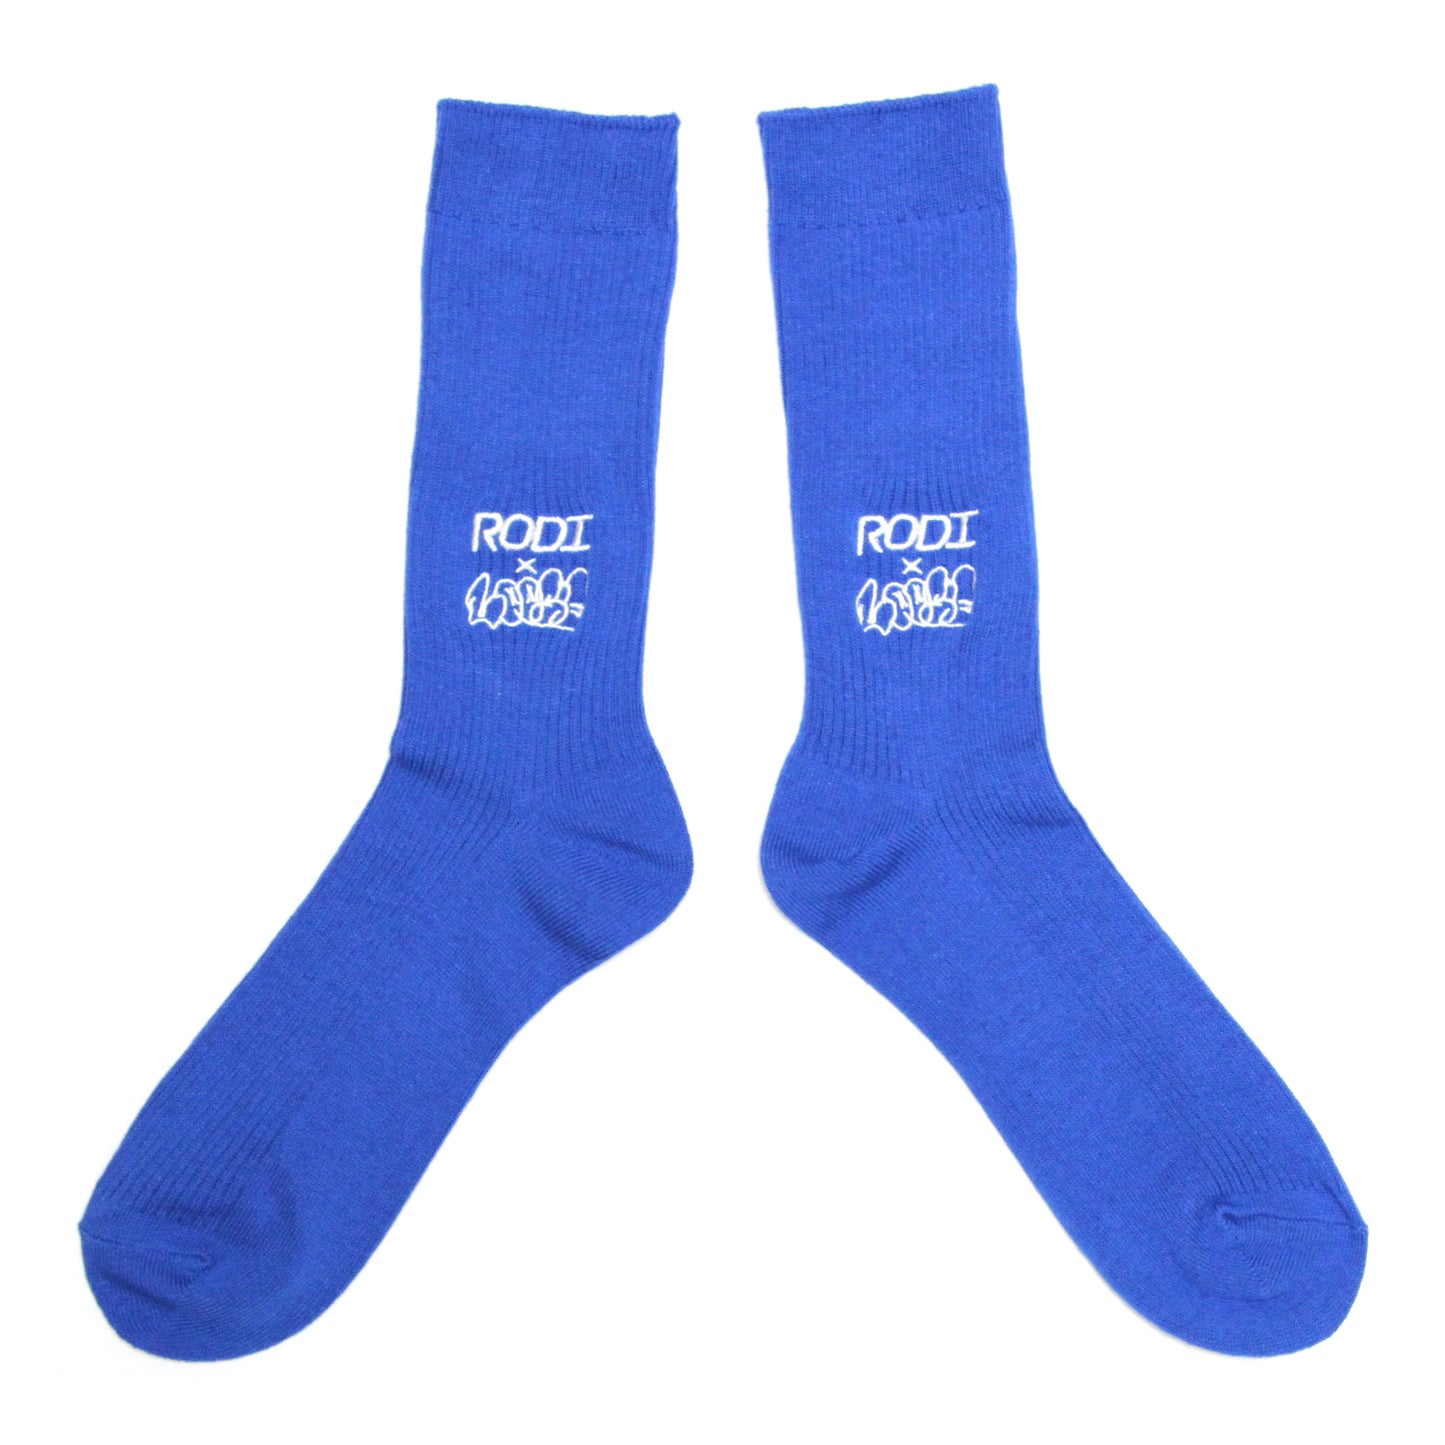 RODI X LOOSE - Double Name Loose Socks